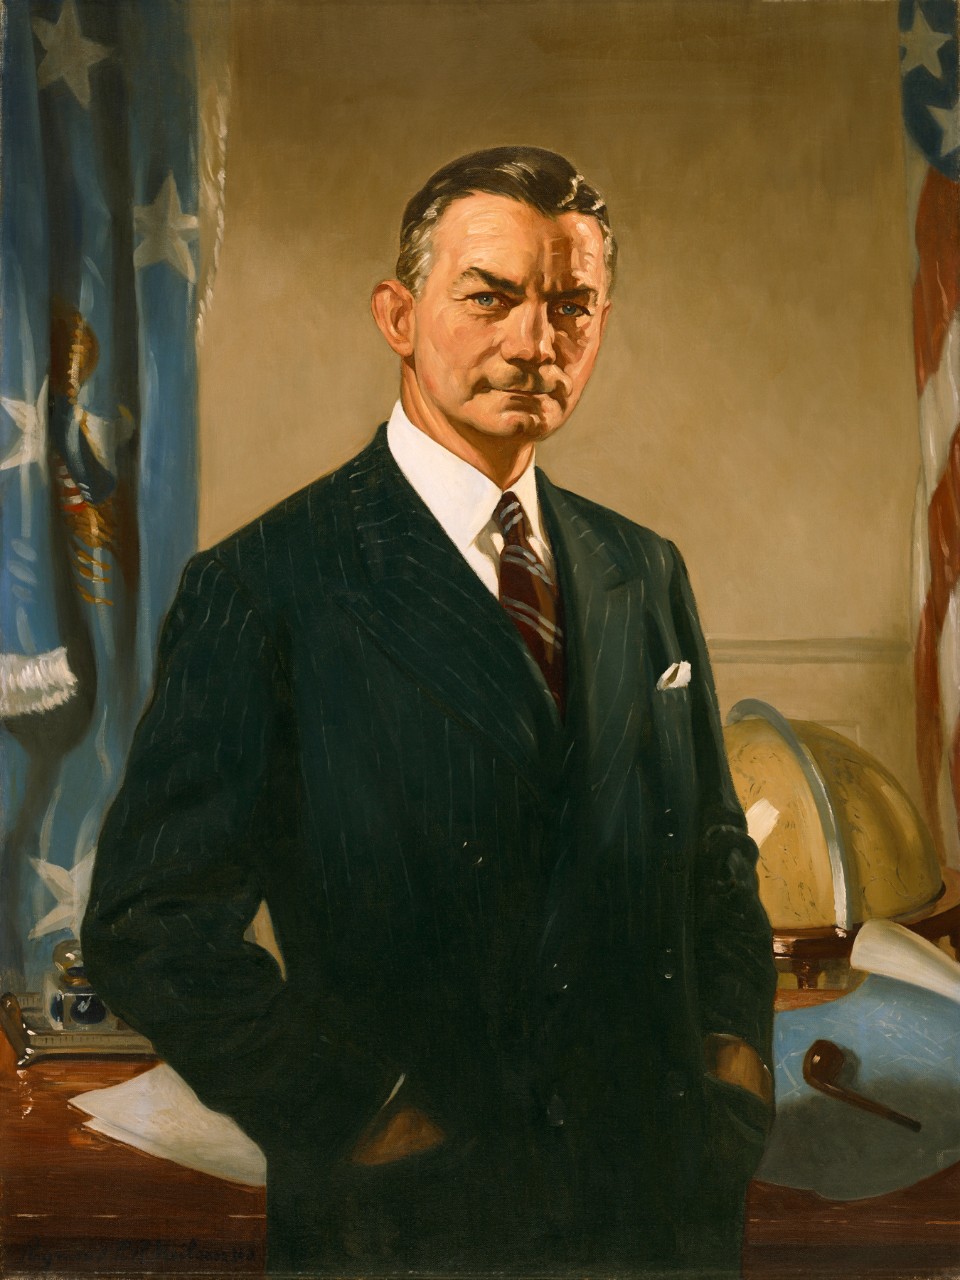 Secretary of the Navy James V. Forrestal